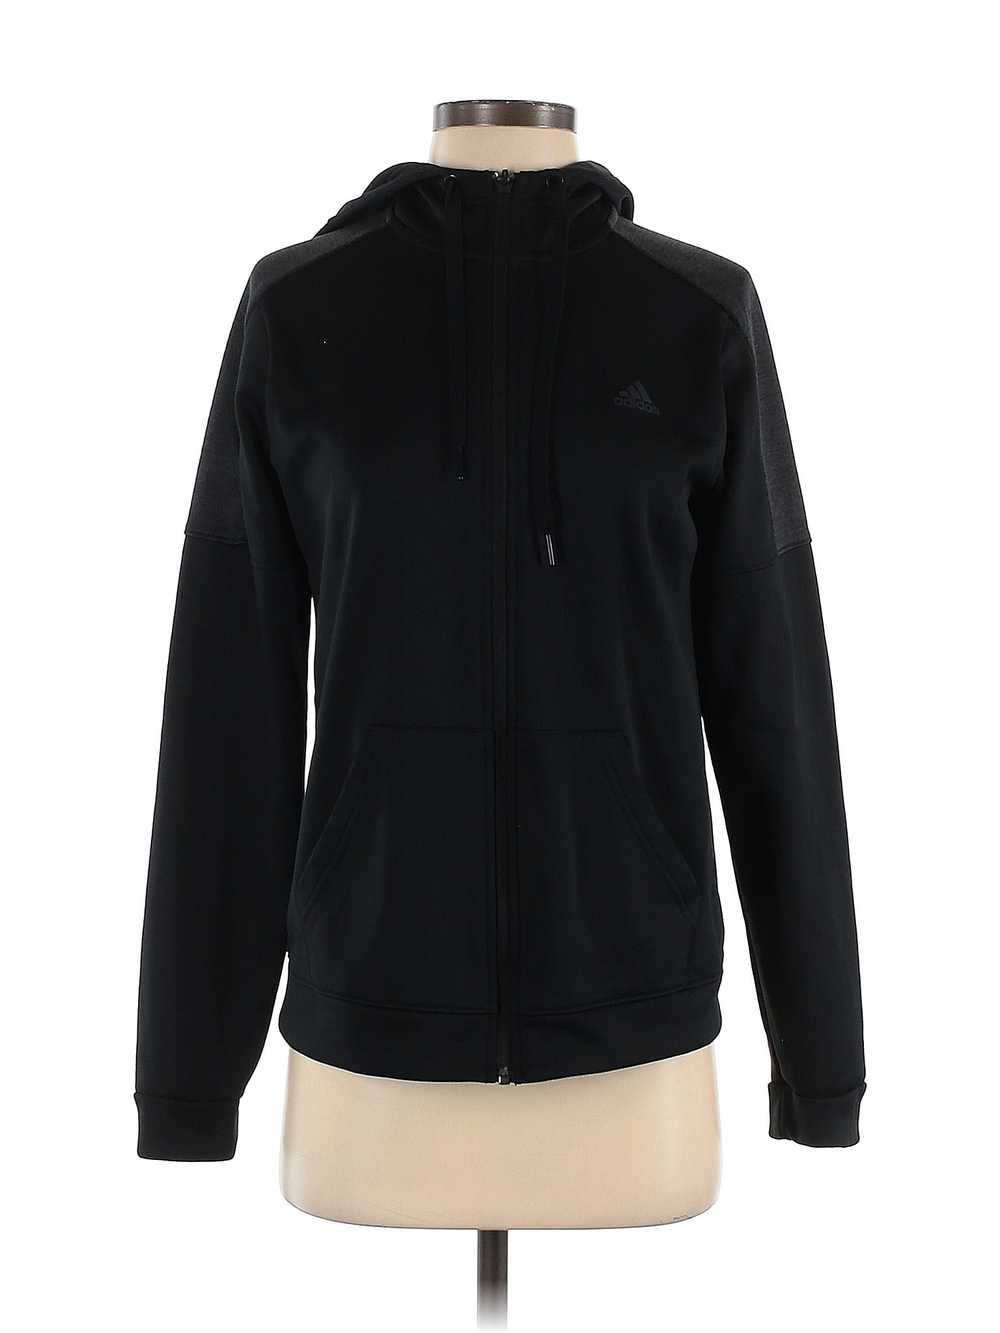 Adidas Women Black Track Jacket S - image 1